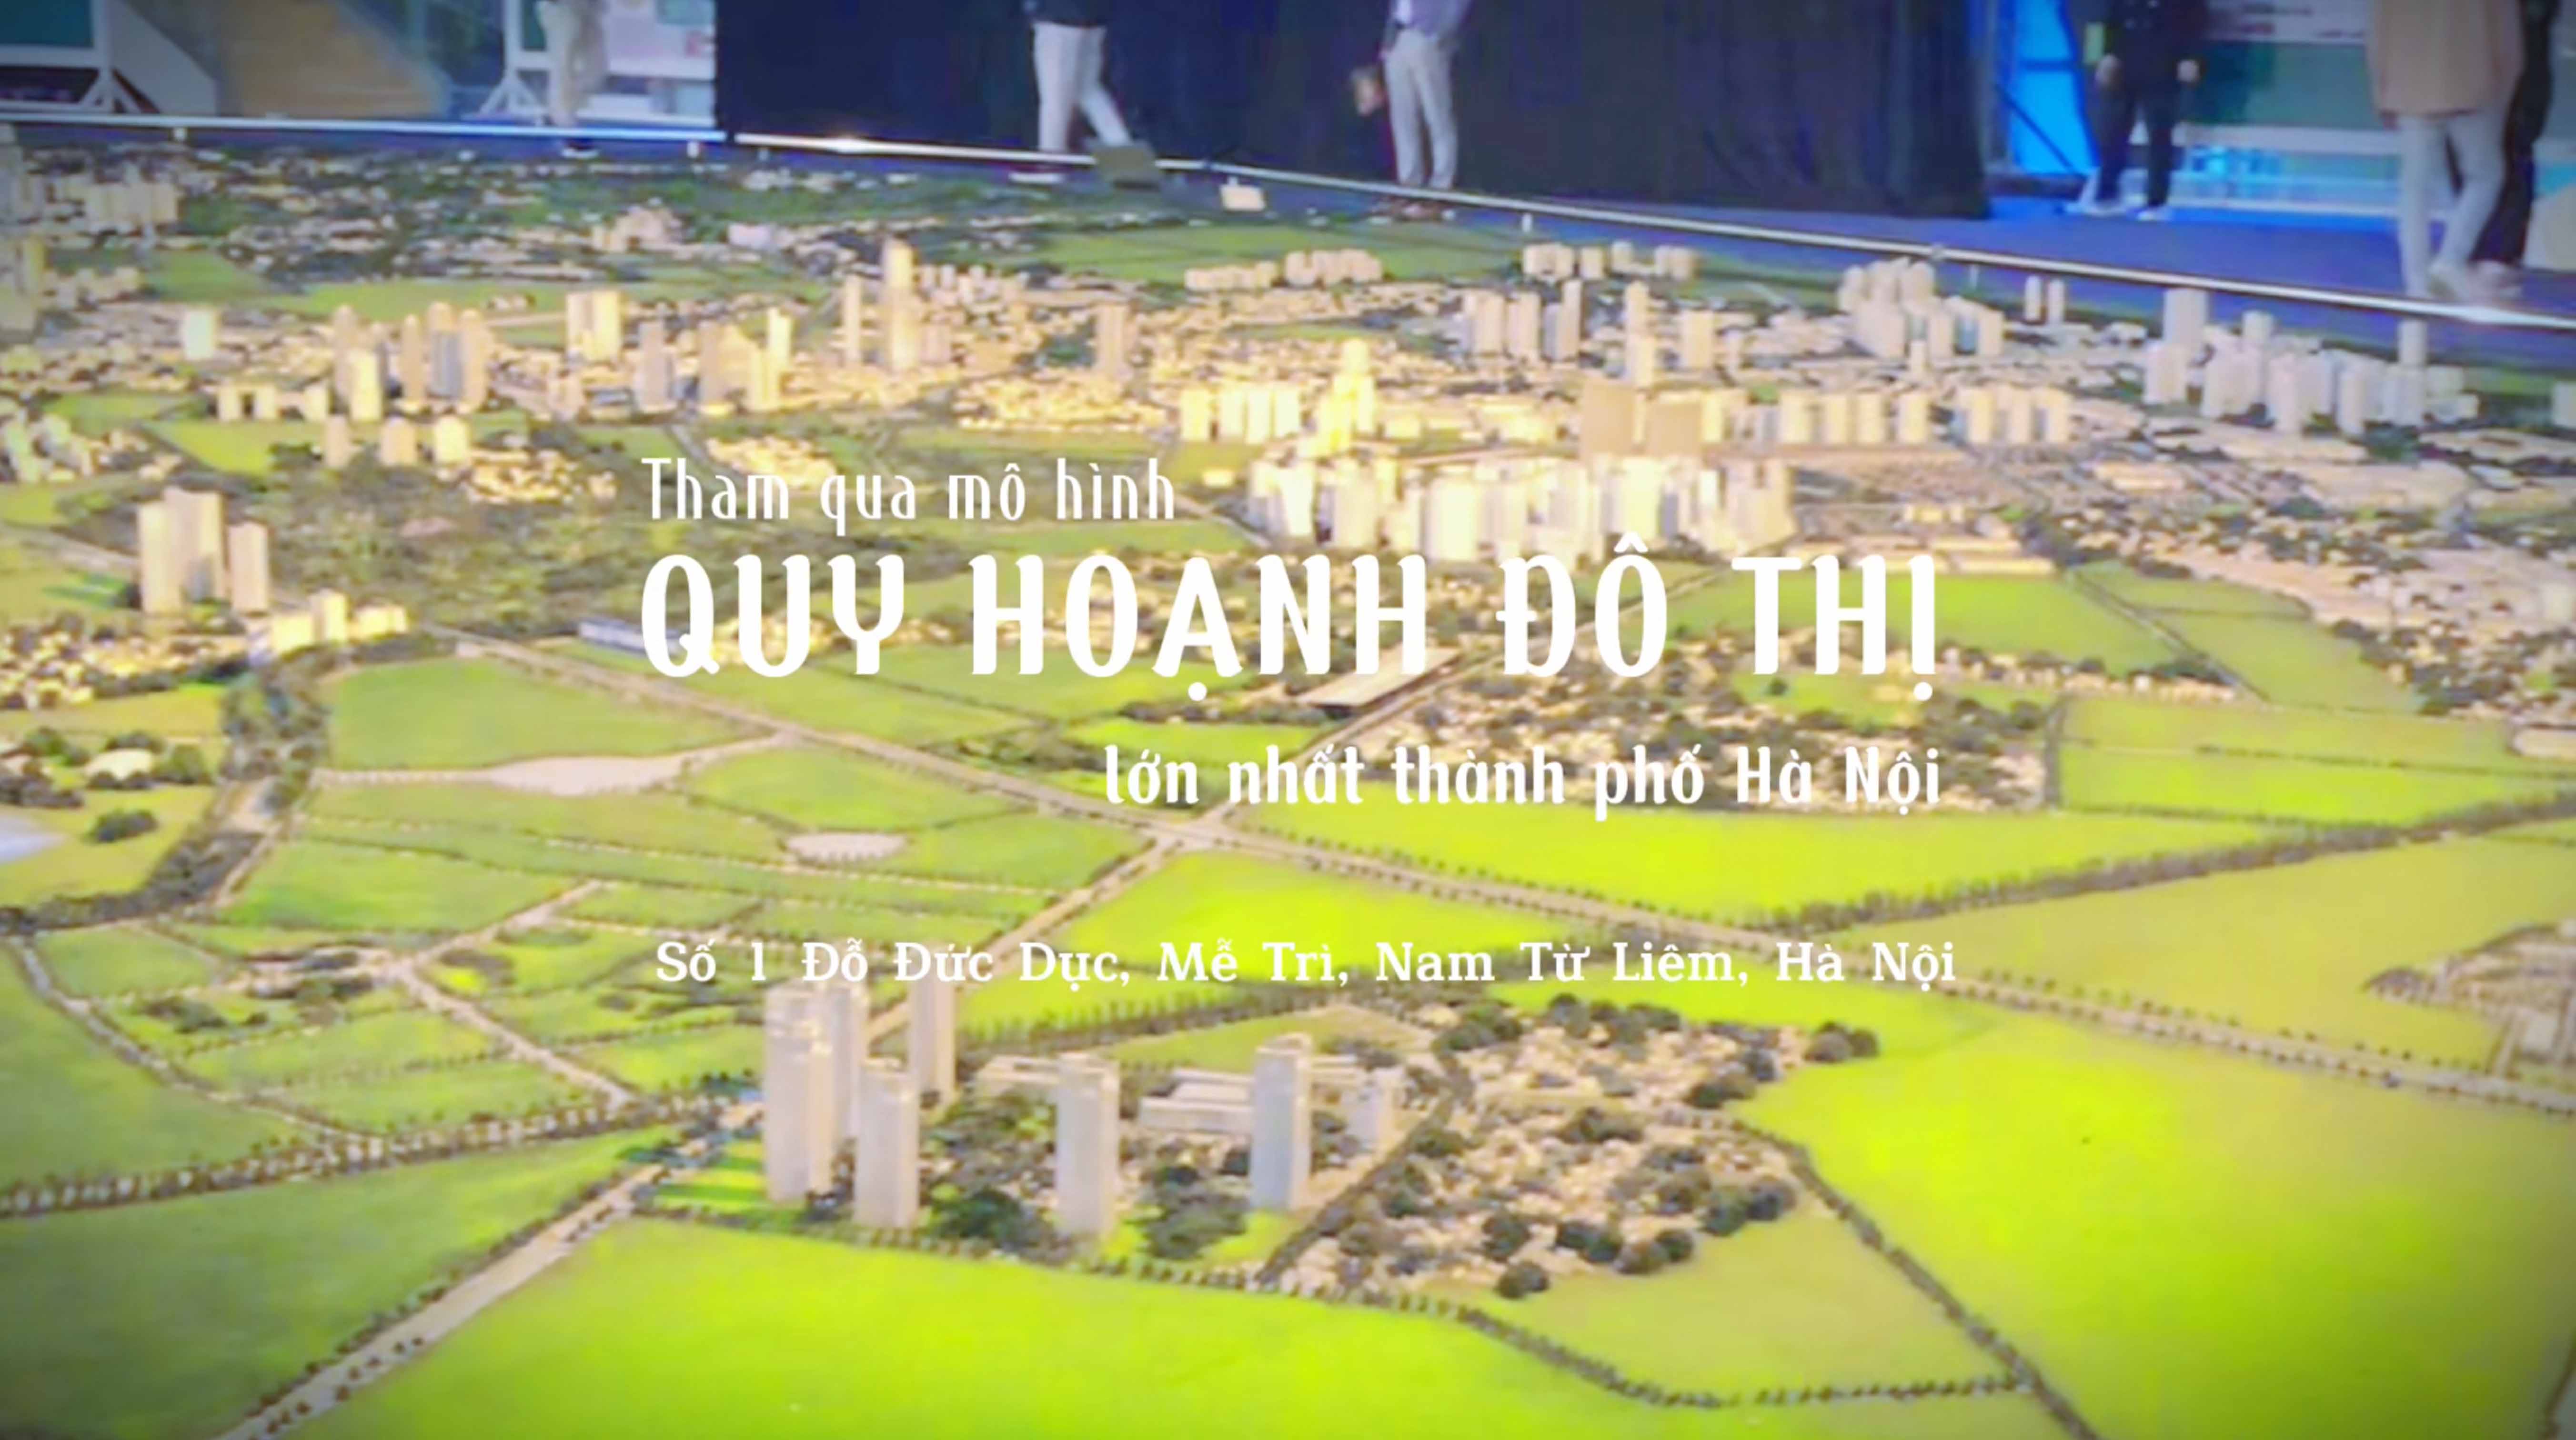 Tham quan mô hình quy hoạch đô thi lớn nhất thành phố Hà Nội